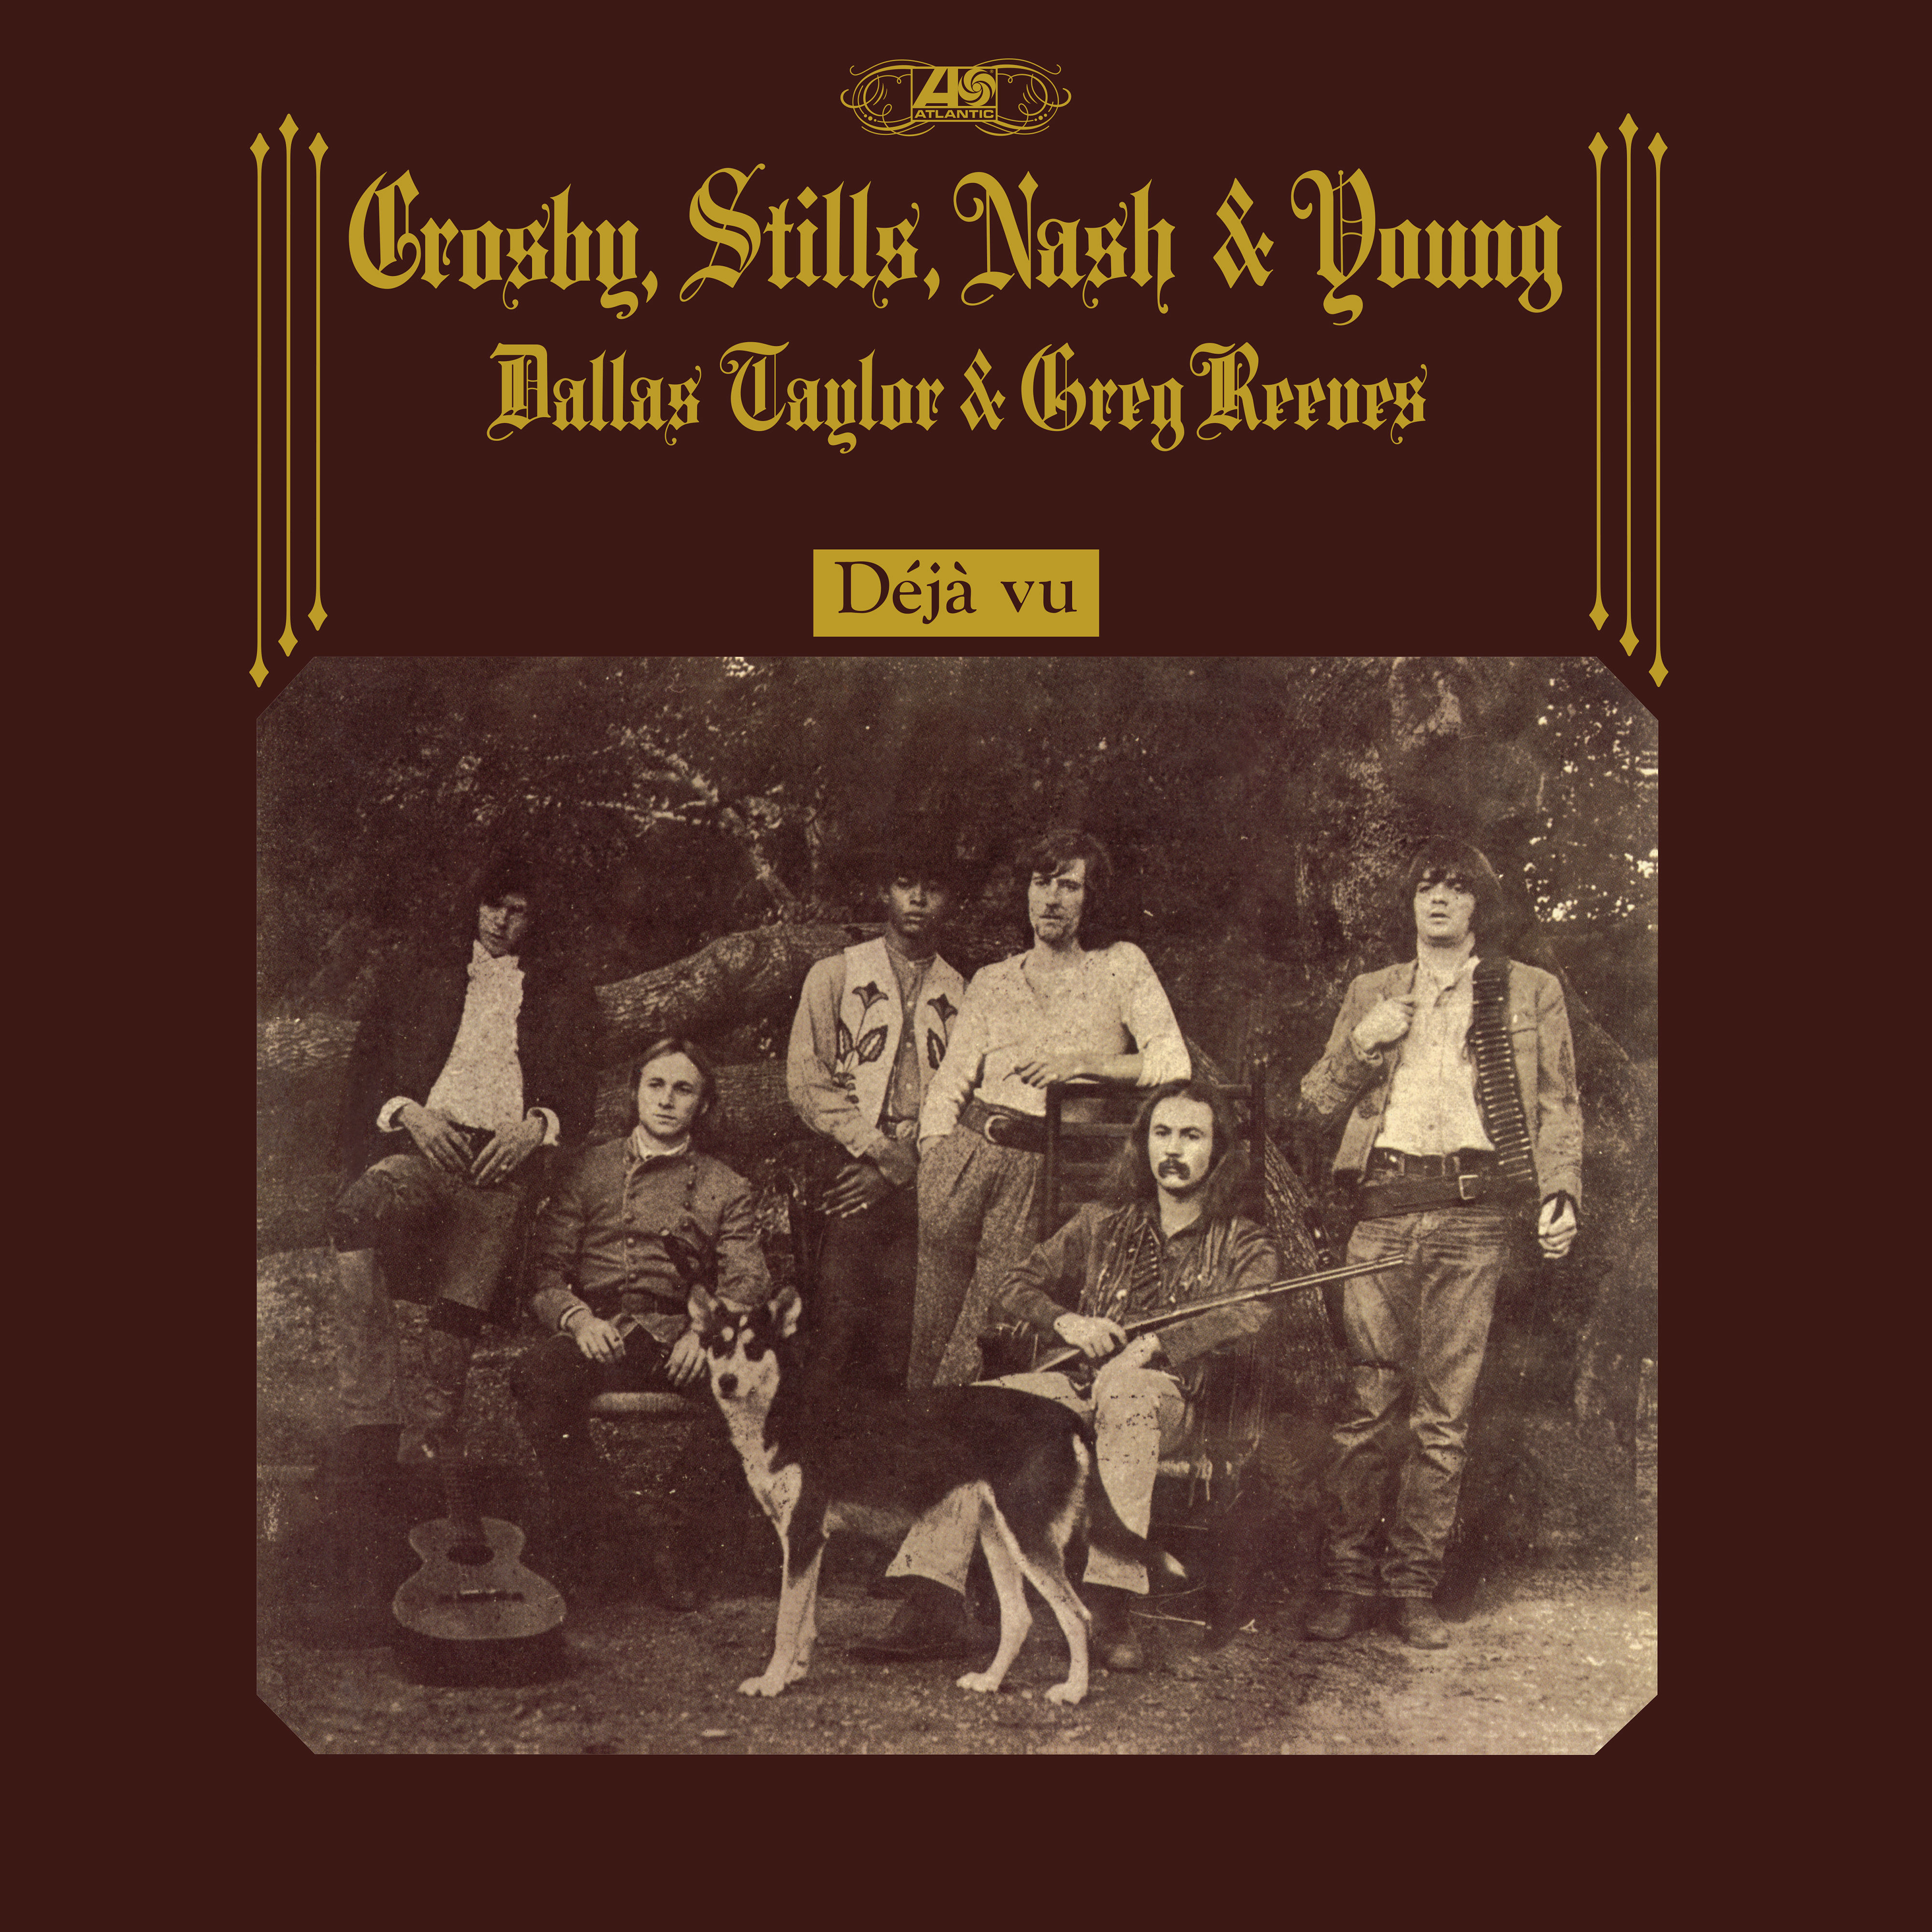 Crosby, Stills, Nash & Young – Déjà Vu (50th Anniversary Deluxe Edition) (1970/2021) [FLAC 24bit/192kHz]